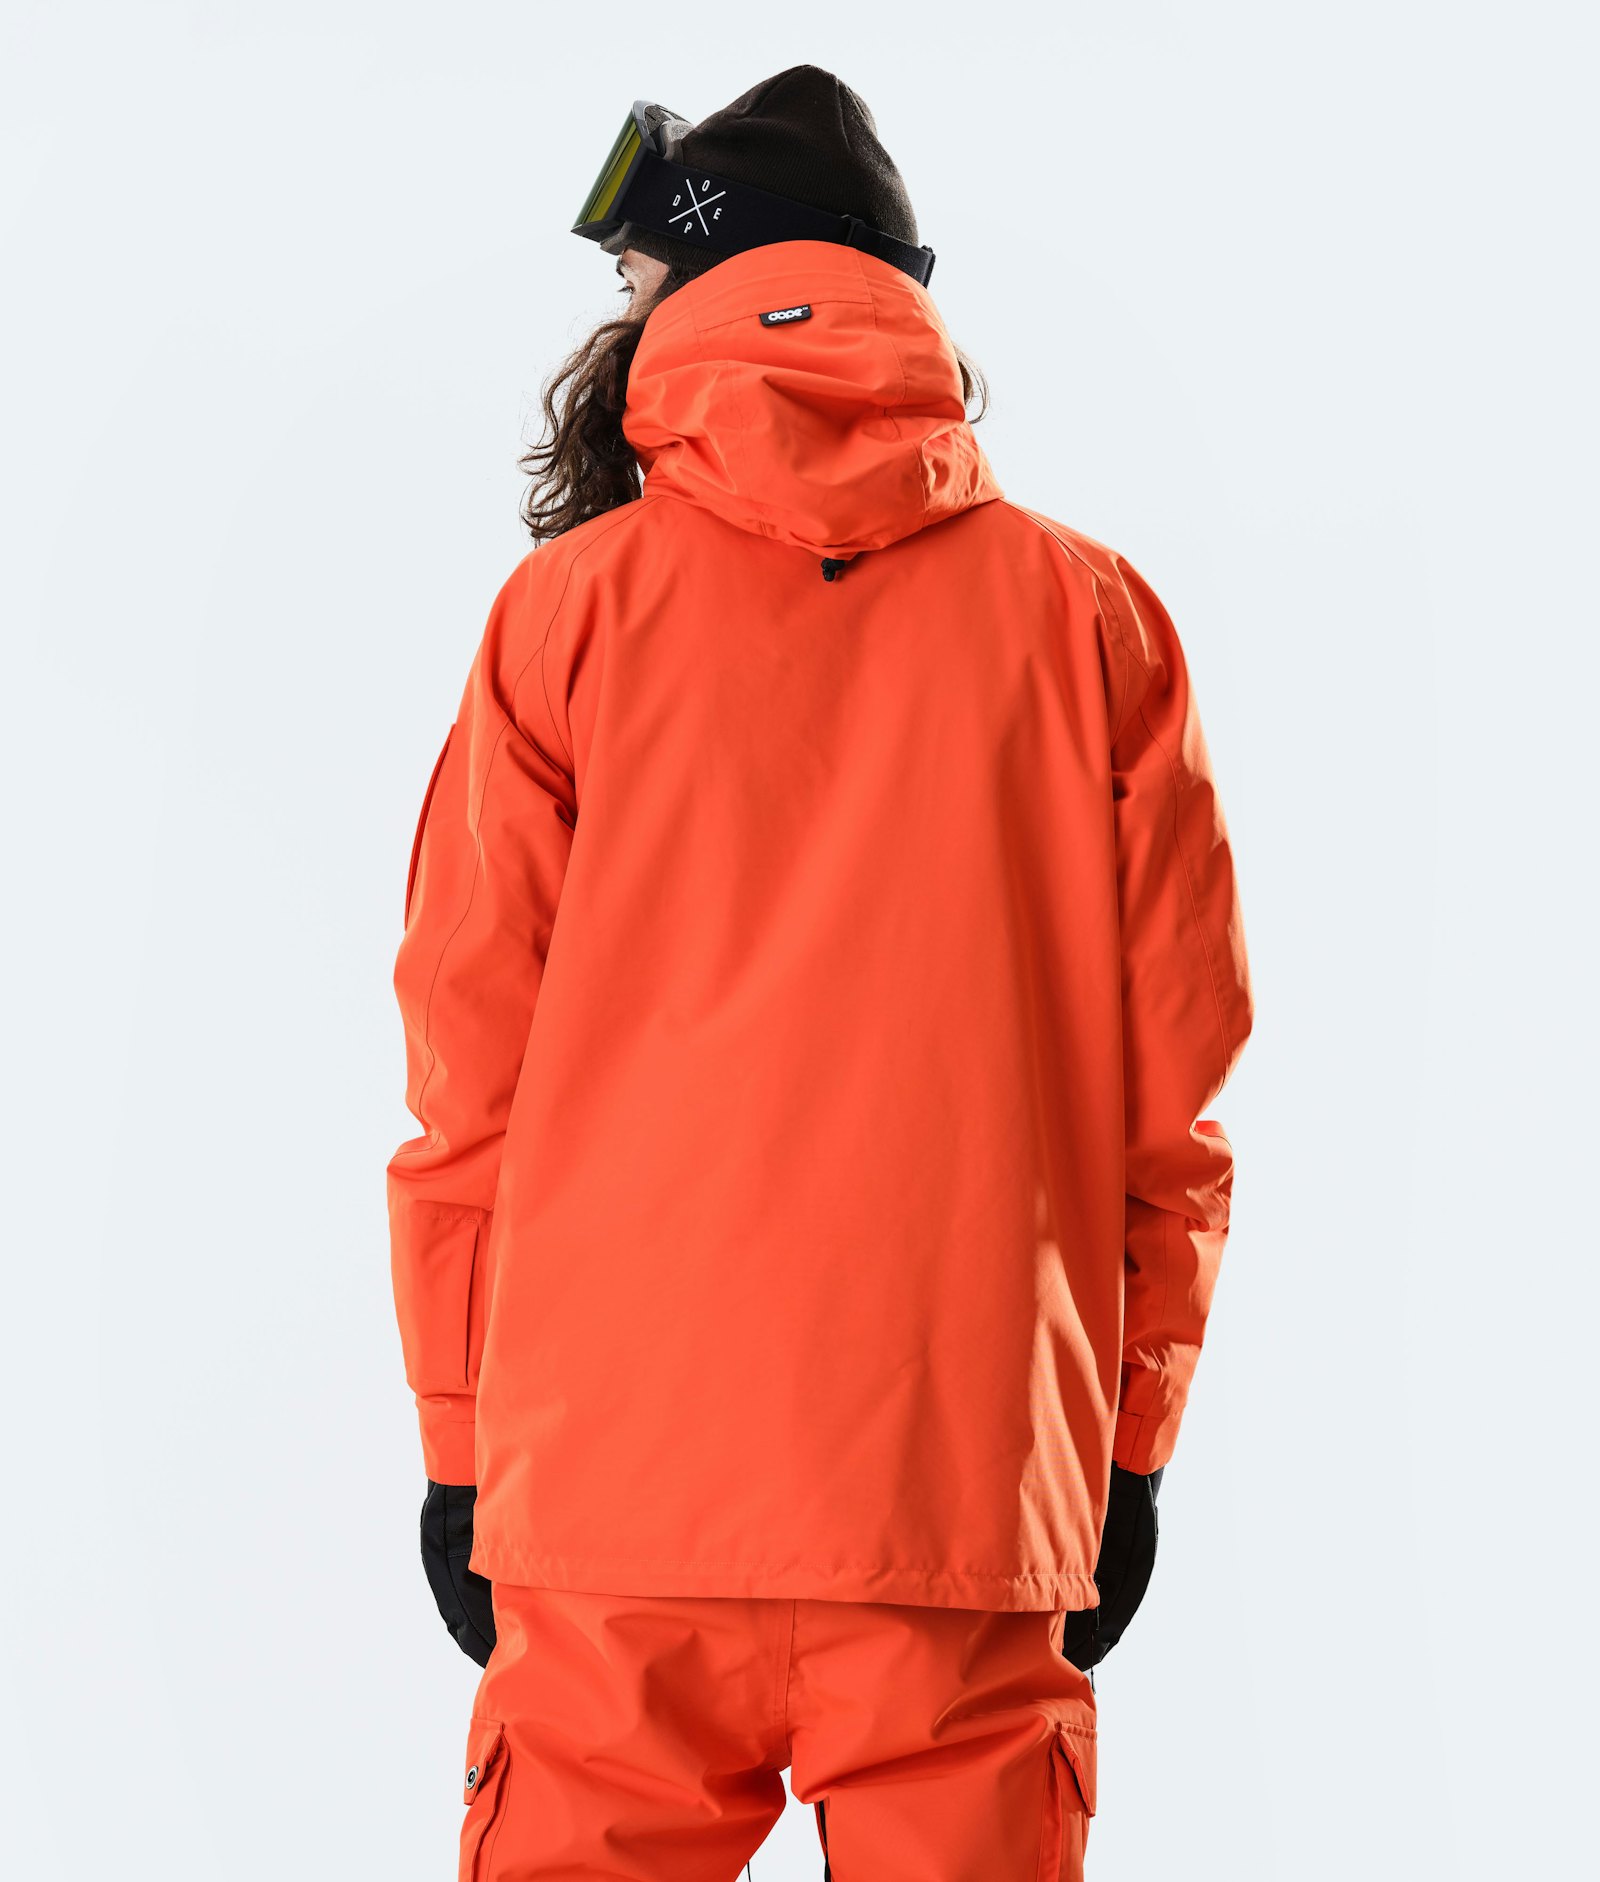 Annok 2020 Veste Snowboard Homme Orange